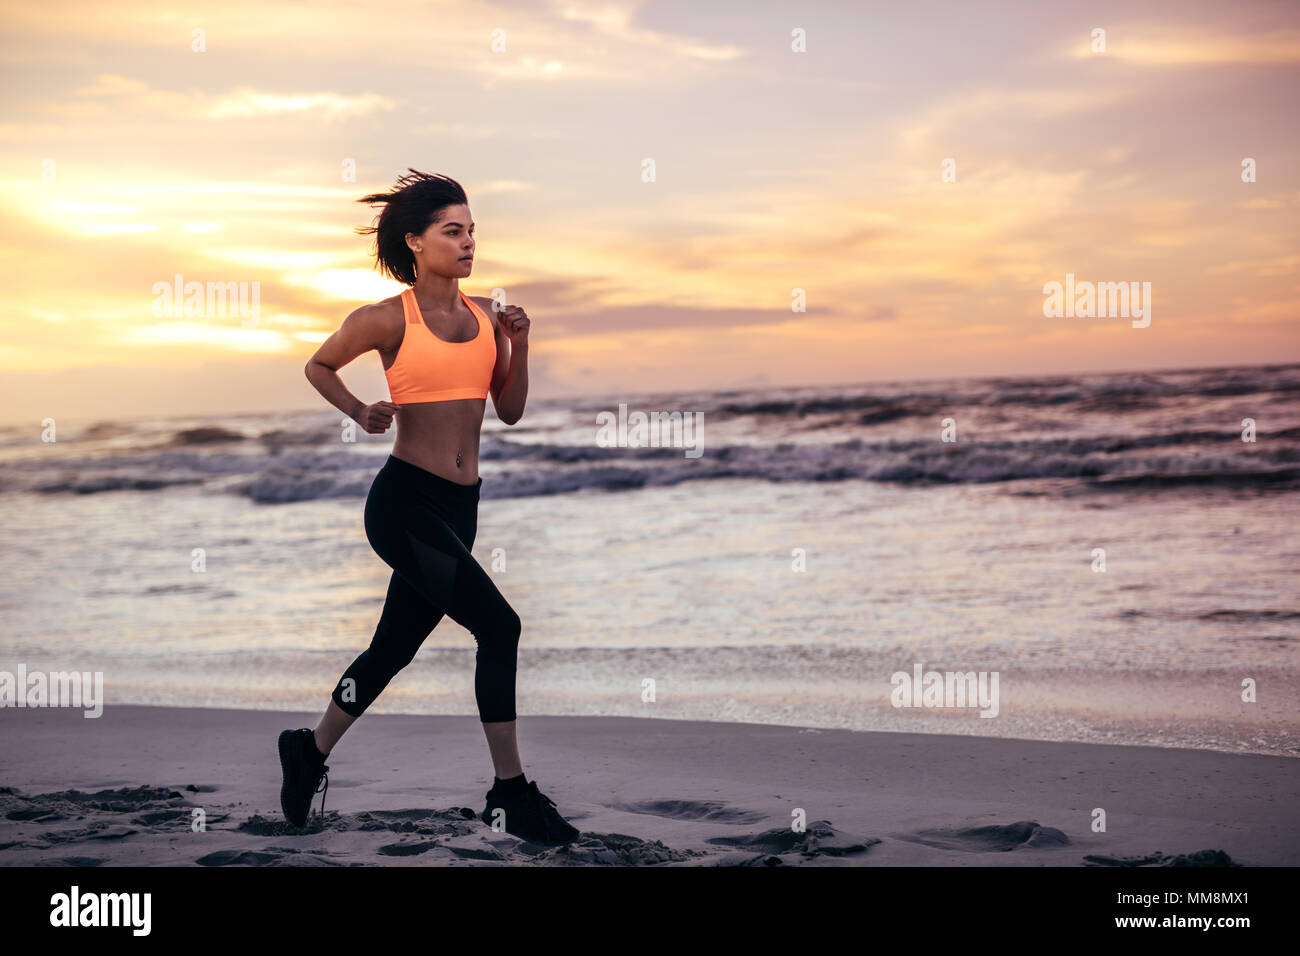 Sportlerin am Strand entlang am Morgen läuft. Frau im laufenden Outfit Sprinten am Ufer des Meeres. Stockfoto